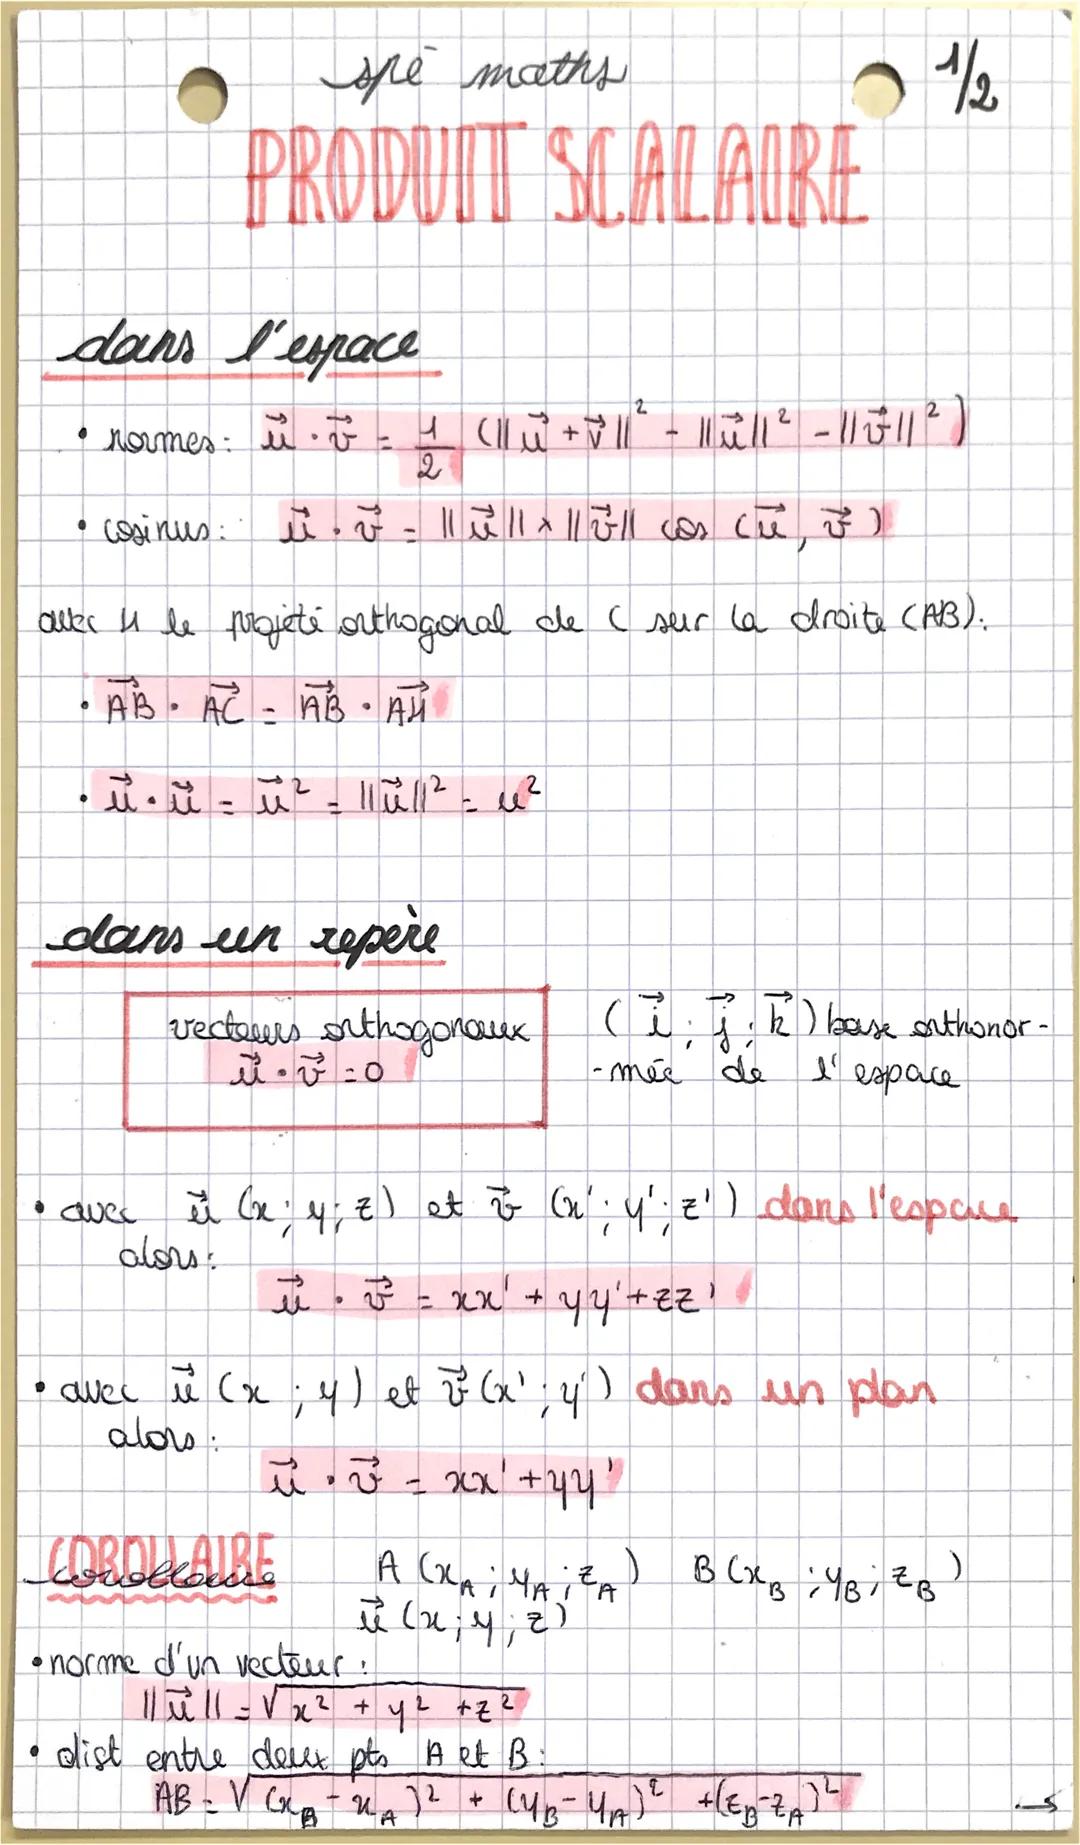 dans l'espace
-
• normes i v
▸
●
spe maths
PRODUIT SCALAIRE
cosinus:
2
ü. - | || || || cas ch F²)
2
•ū•ü - ū²-11 üll² = ²
dans un repère
• a